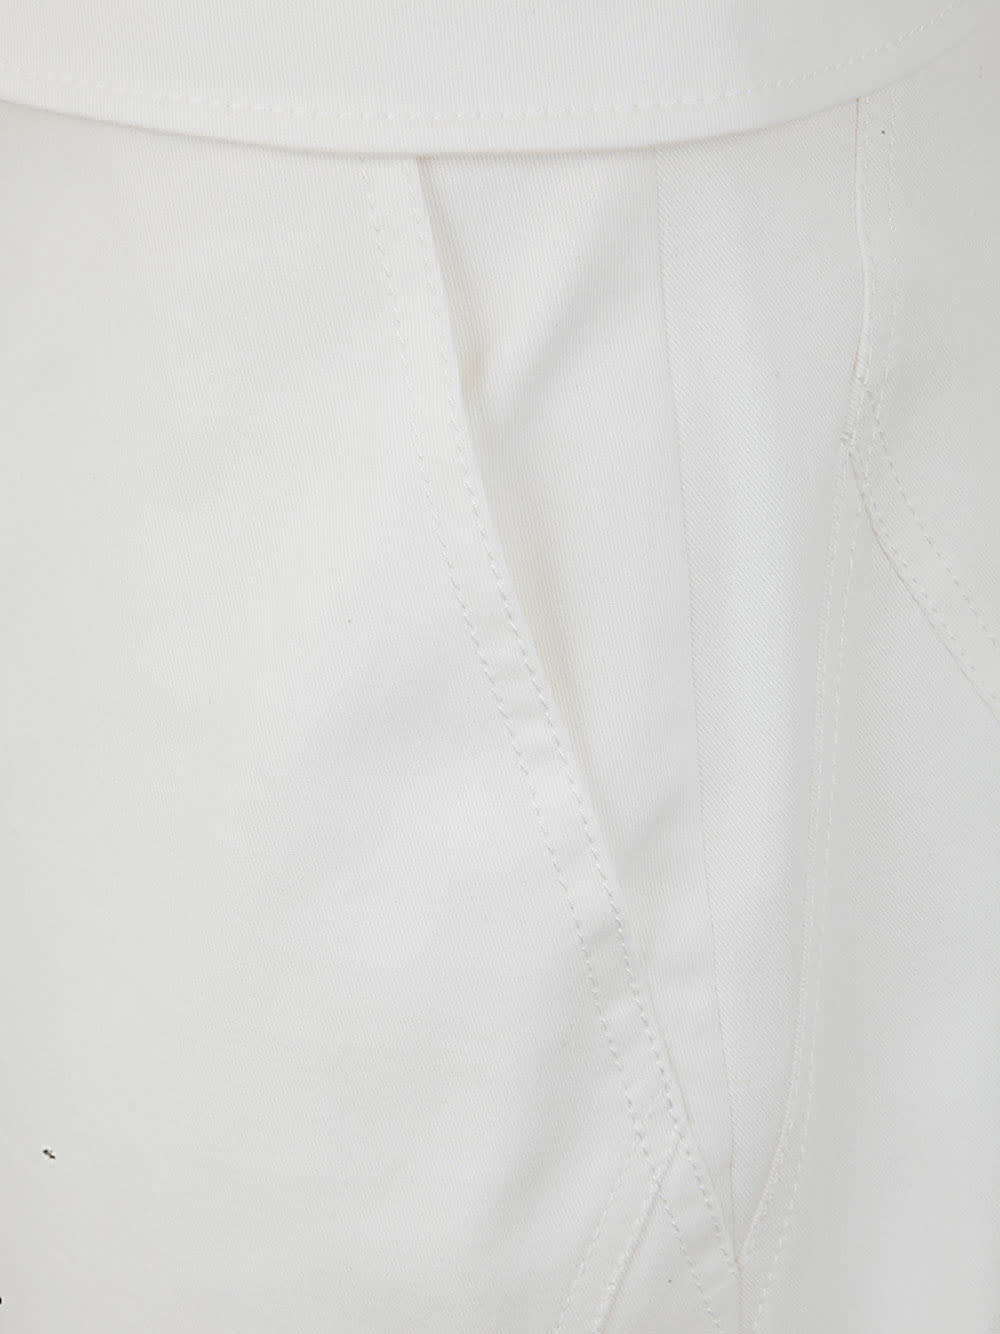 Shop Alberta Ferretti Stretch Gabardine Trouser In White